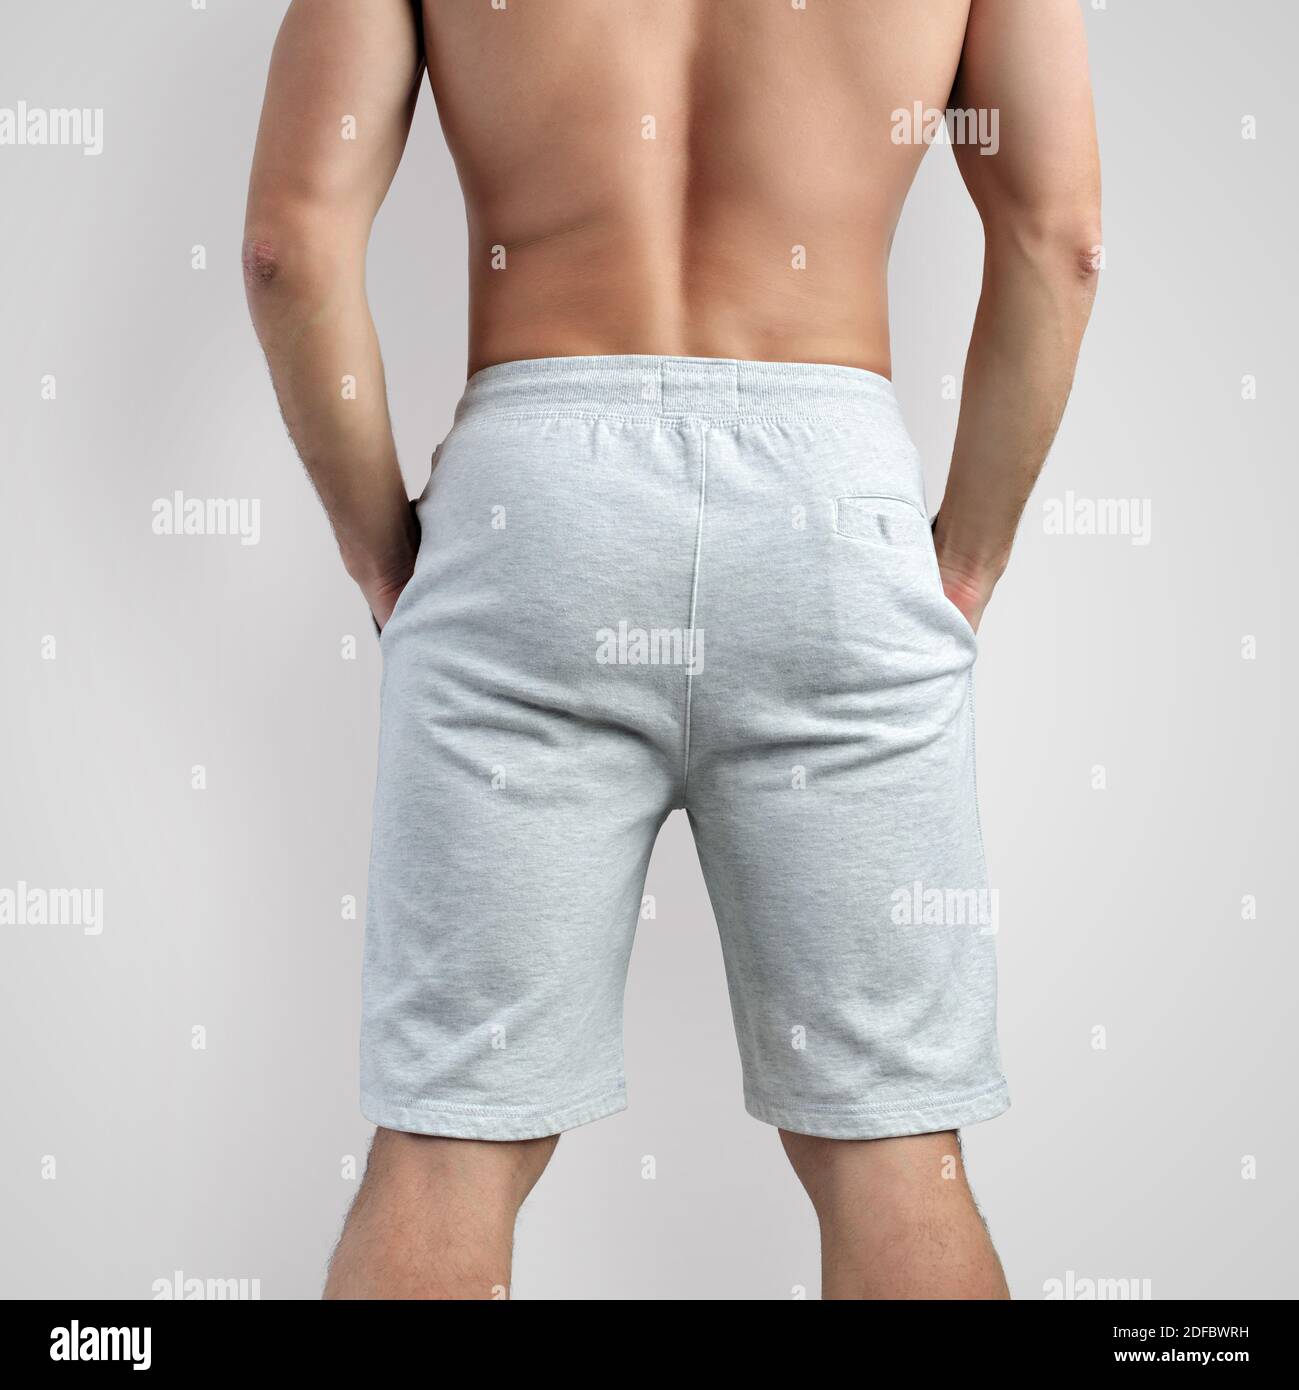 Modello di shorts bianchi maschio per la presentazione del design, vista posteriore. Modello di vestiti bianchi su uno sfondo isolato per la pubblicità nel stor online Foto Stock